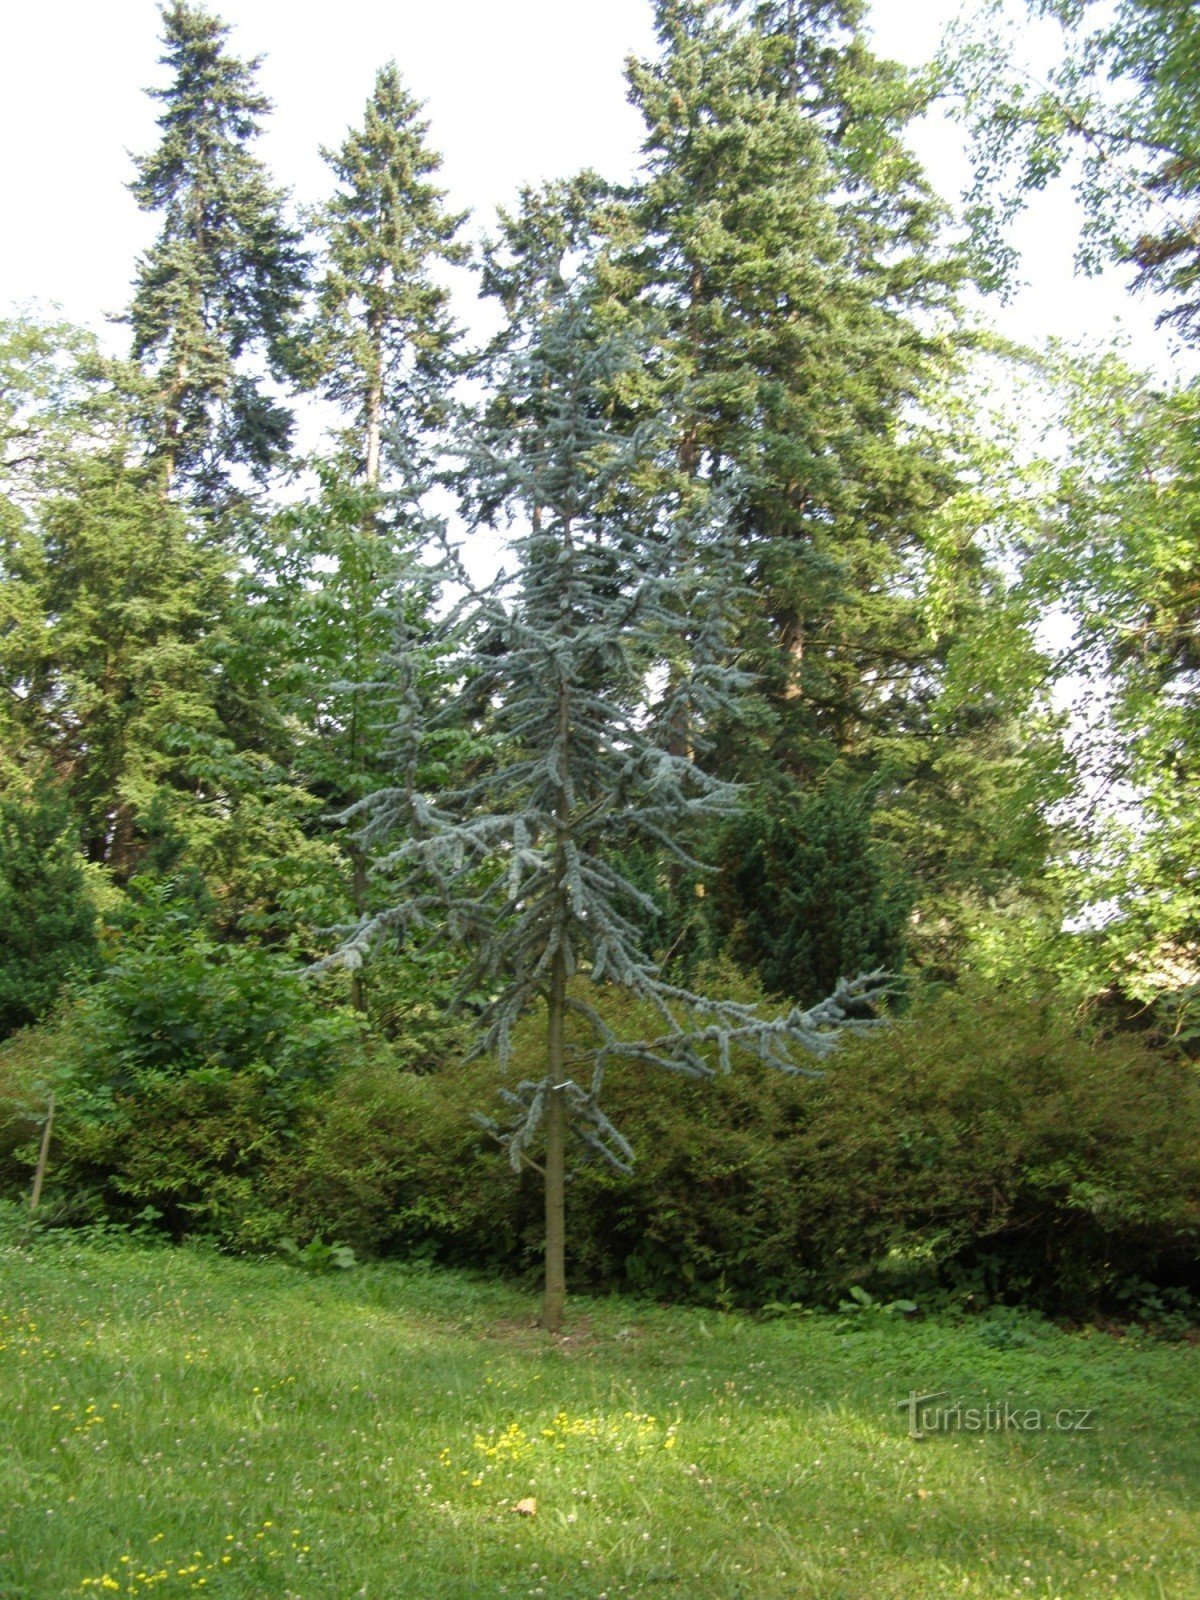 Arboretum Nový Dvůr perto de Opava